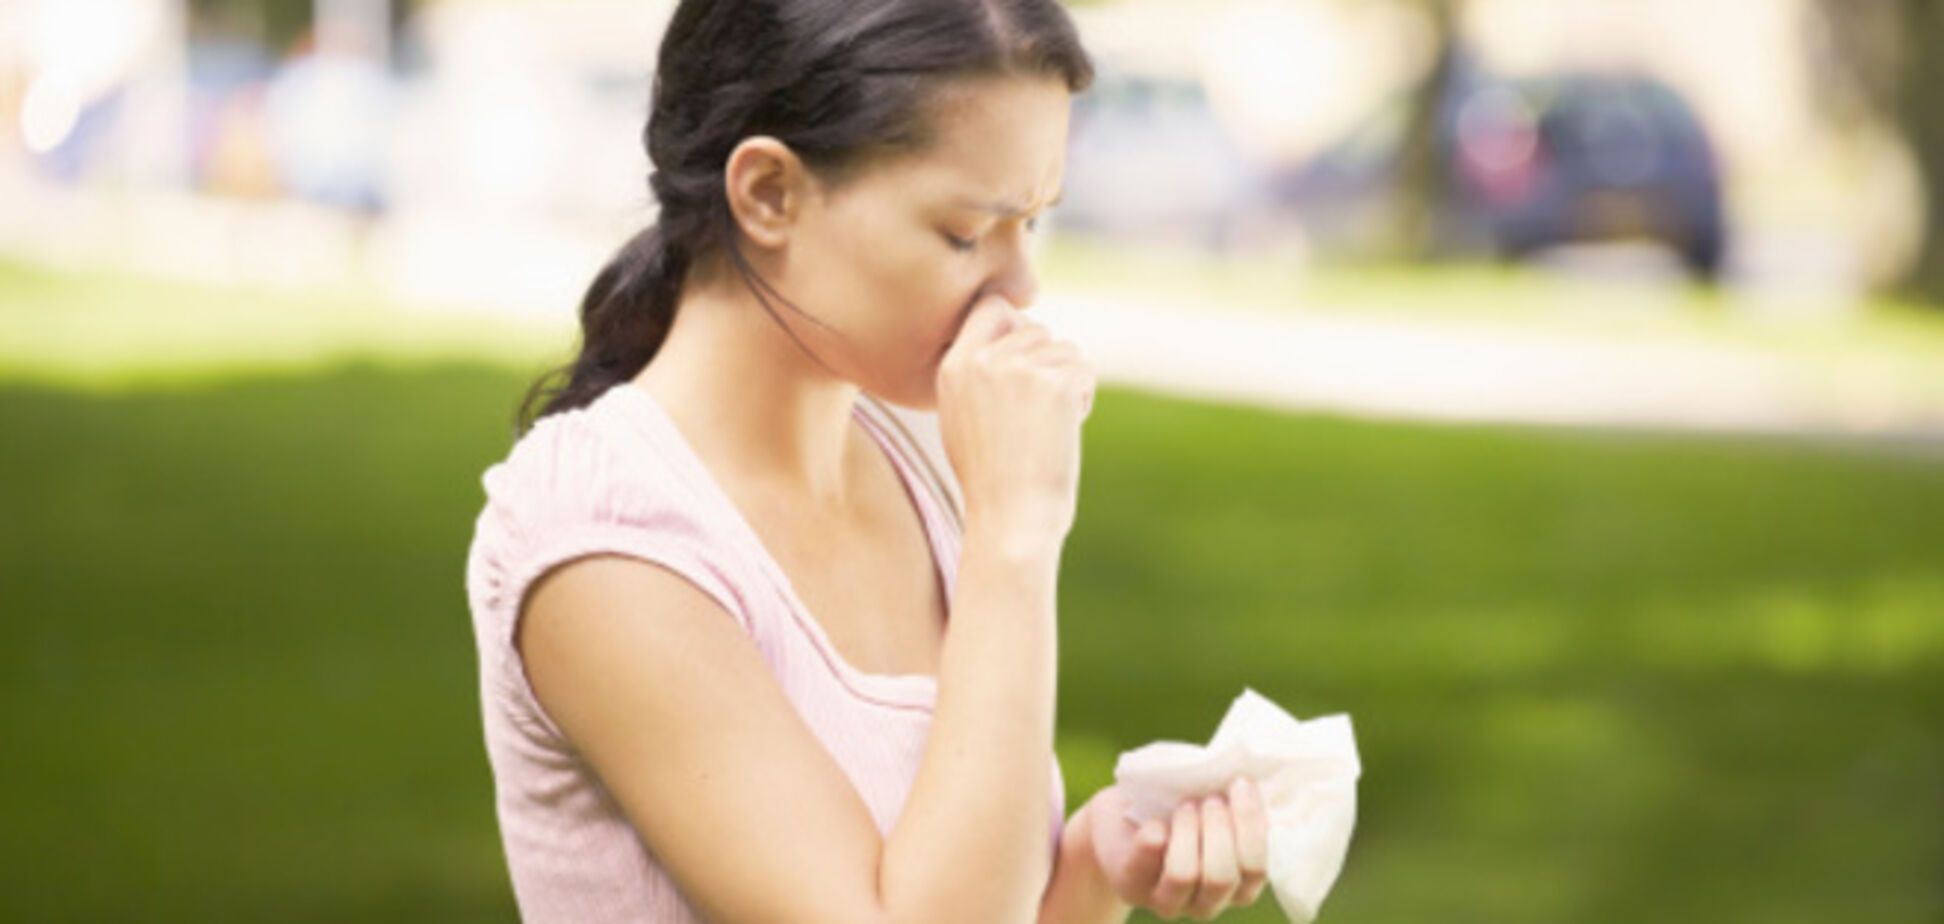 7 секретов, как избавиться от аллергии без лекарств